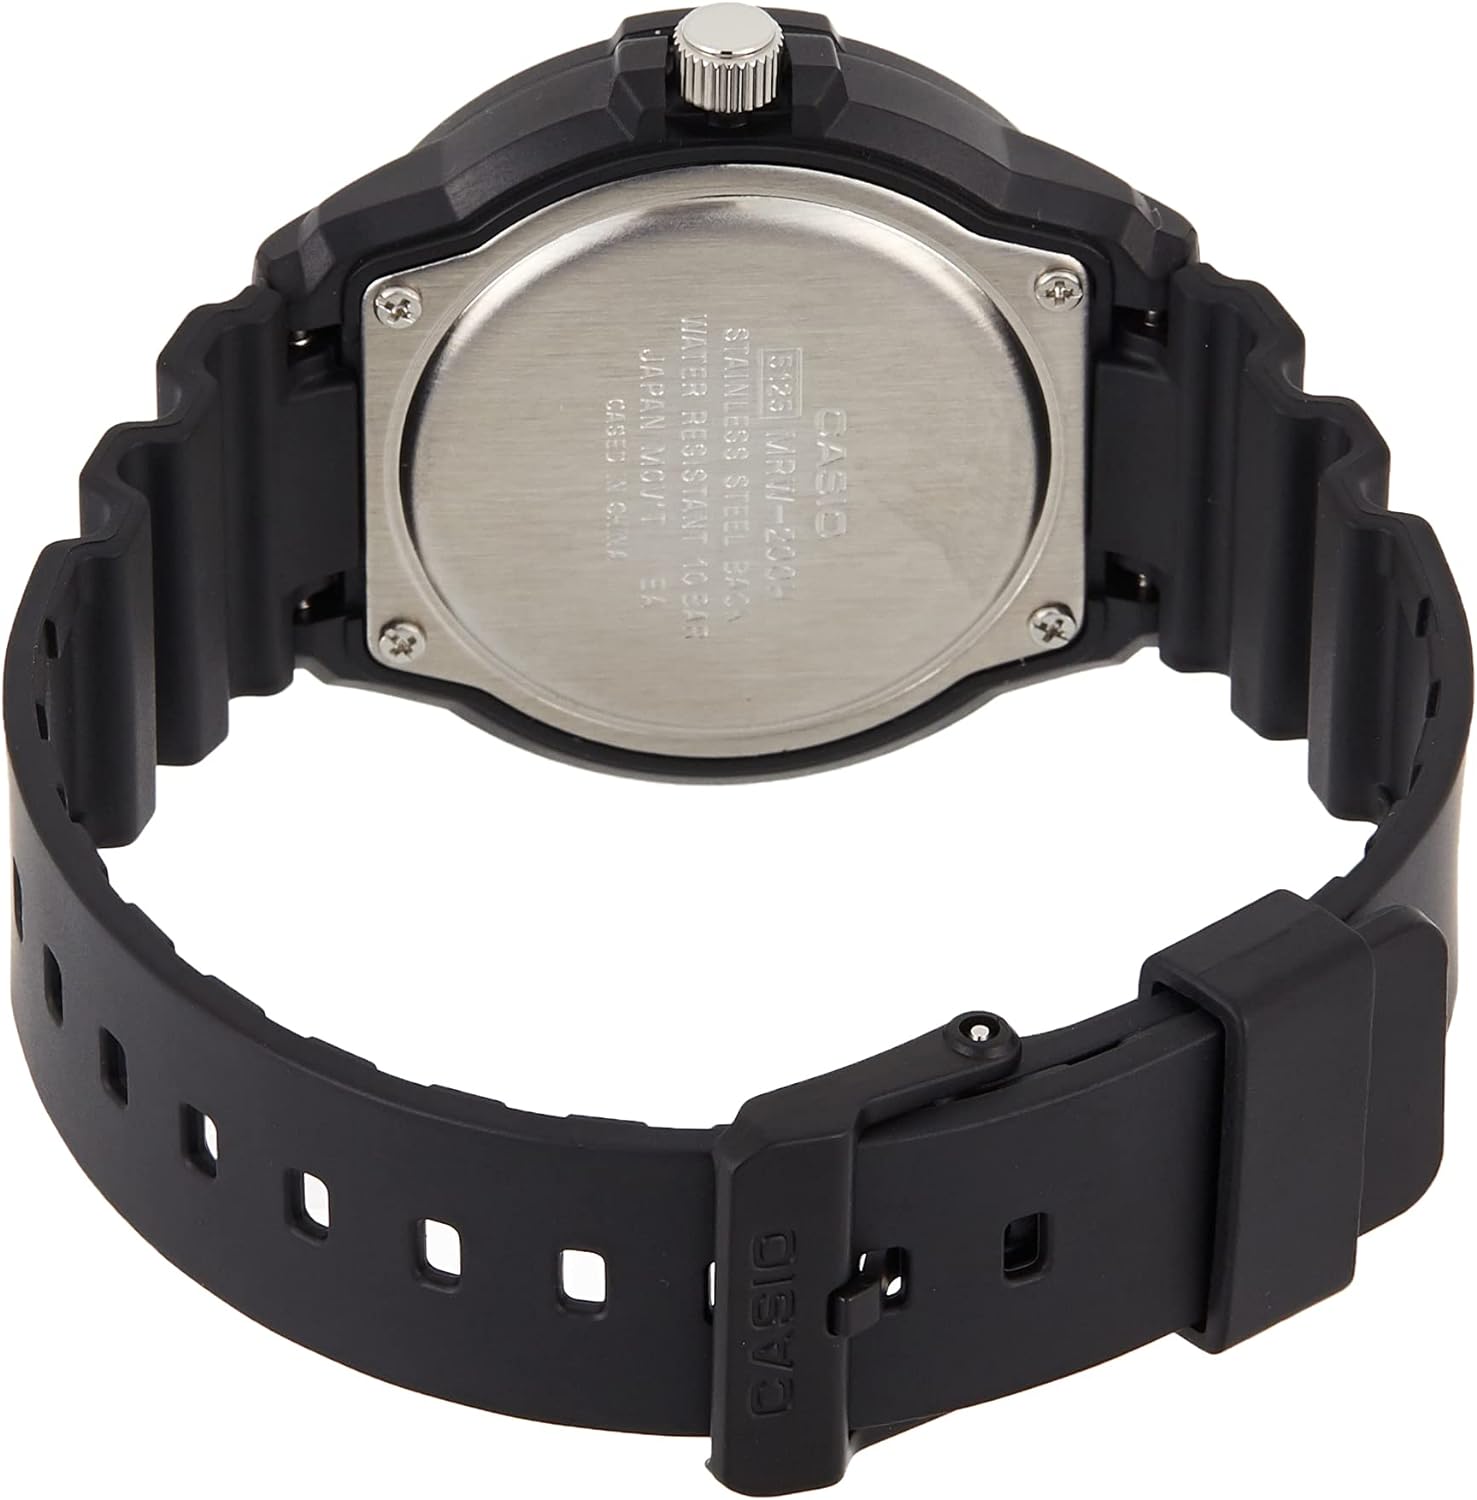 Casio Men's Black Dial Resin Analog Watch